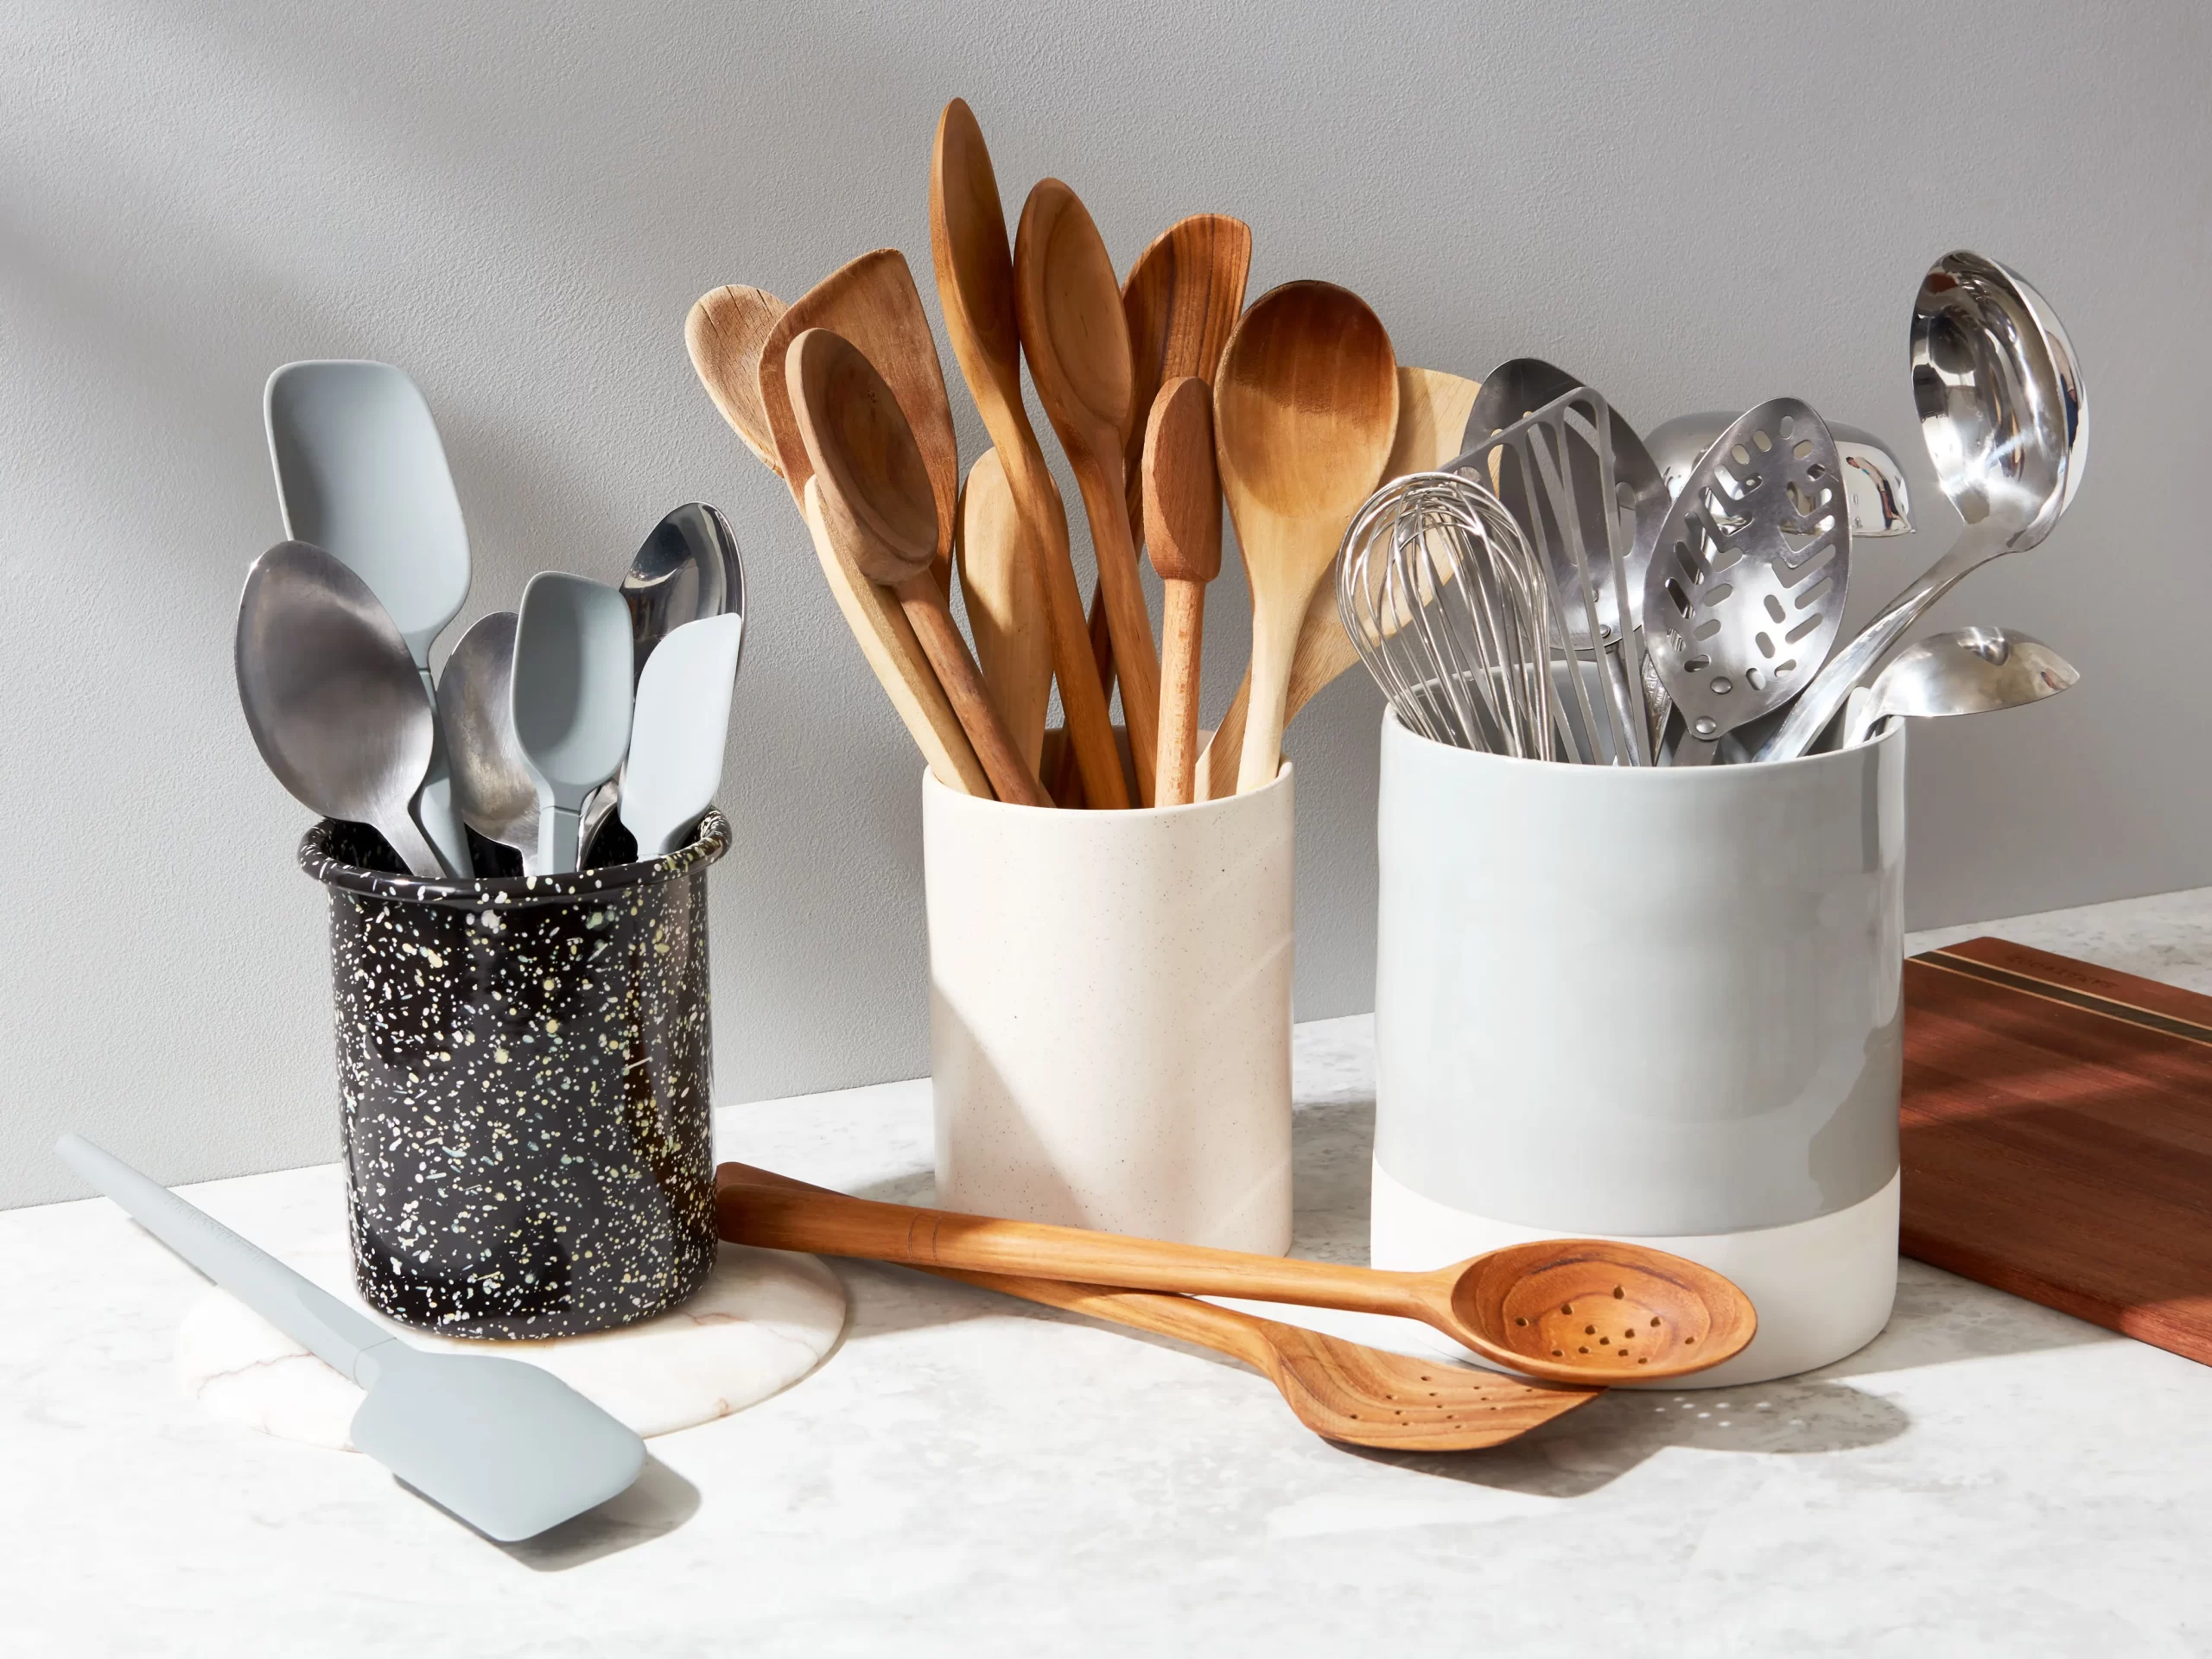 Kitchen utensil holder: Pot holders offer a number of benefits